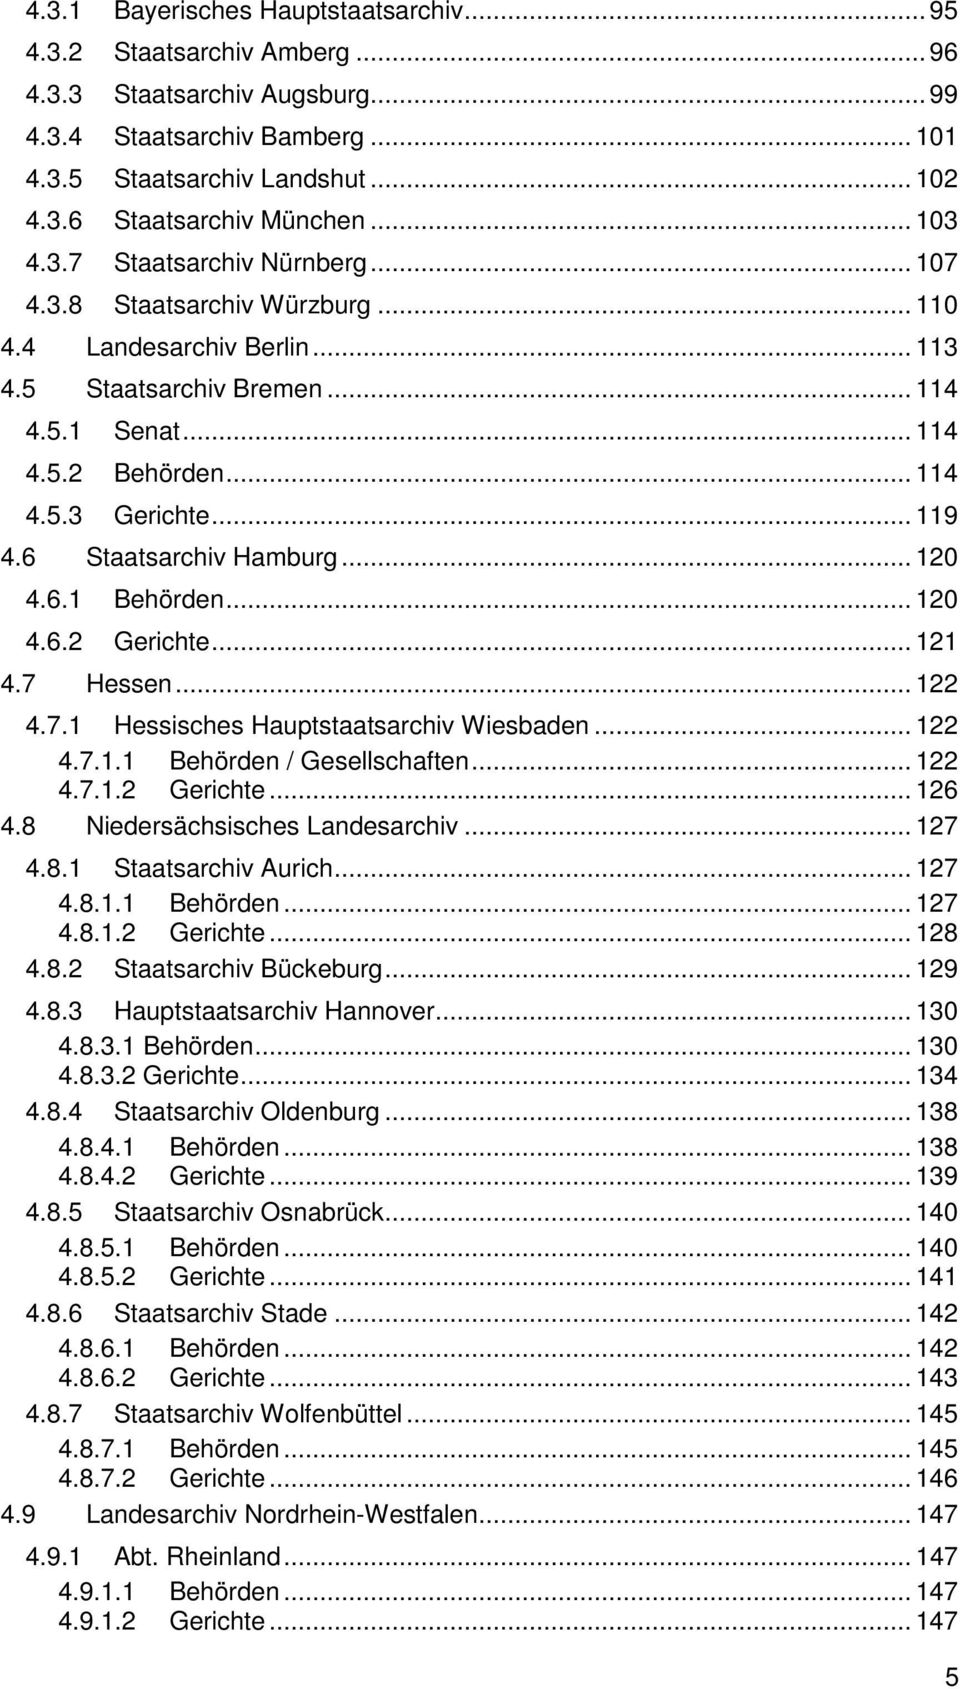 .. 119 4.6 Staatsarchiv Hamburg... 120 4.6.1 Behörden... 120 4.6.2 Gerichte... 121 4.7 Hessen... 122 4.7.1 Hessisches Hauptstaatsarchiv Wiesbaden... 122 4.7.1.1 Behörden / Gesellschaften... 122 4.7.1.2 Gerichte... 126 4.